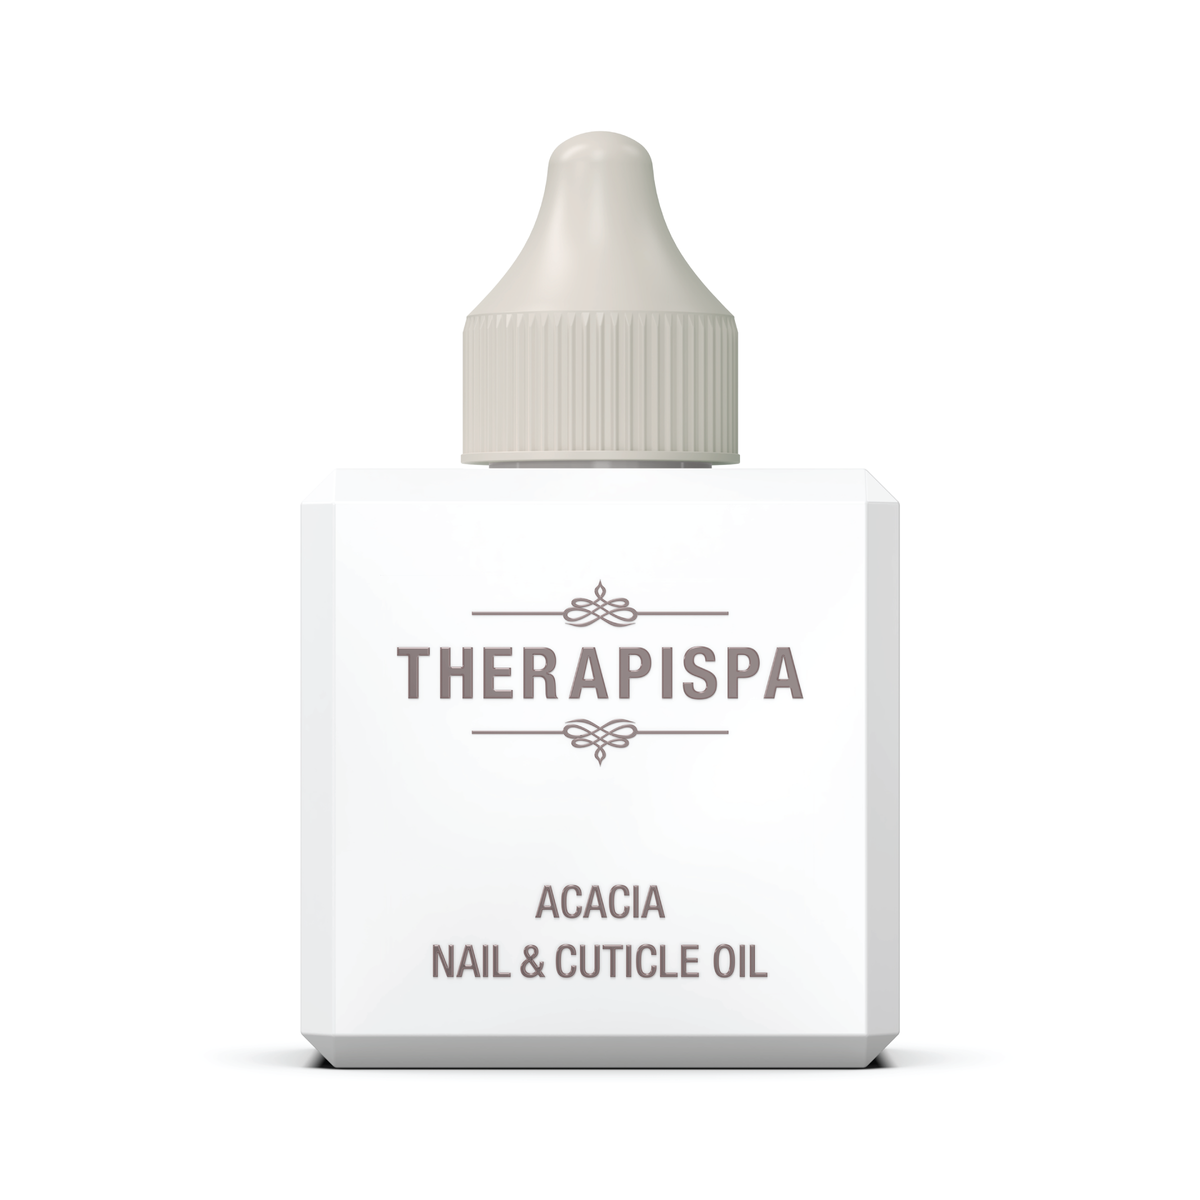 Nail and Cuticle Oil / Acacia